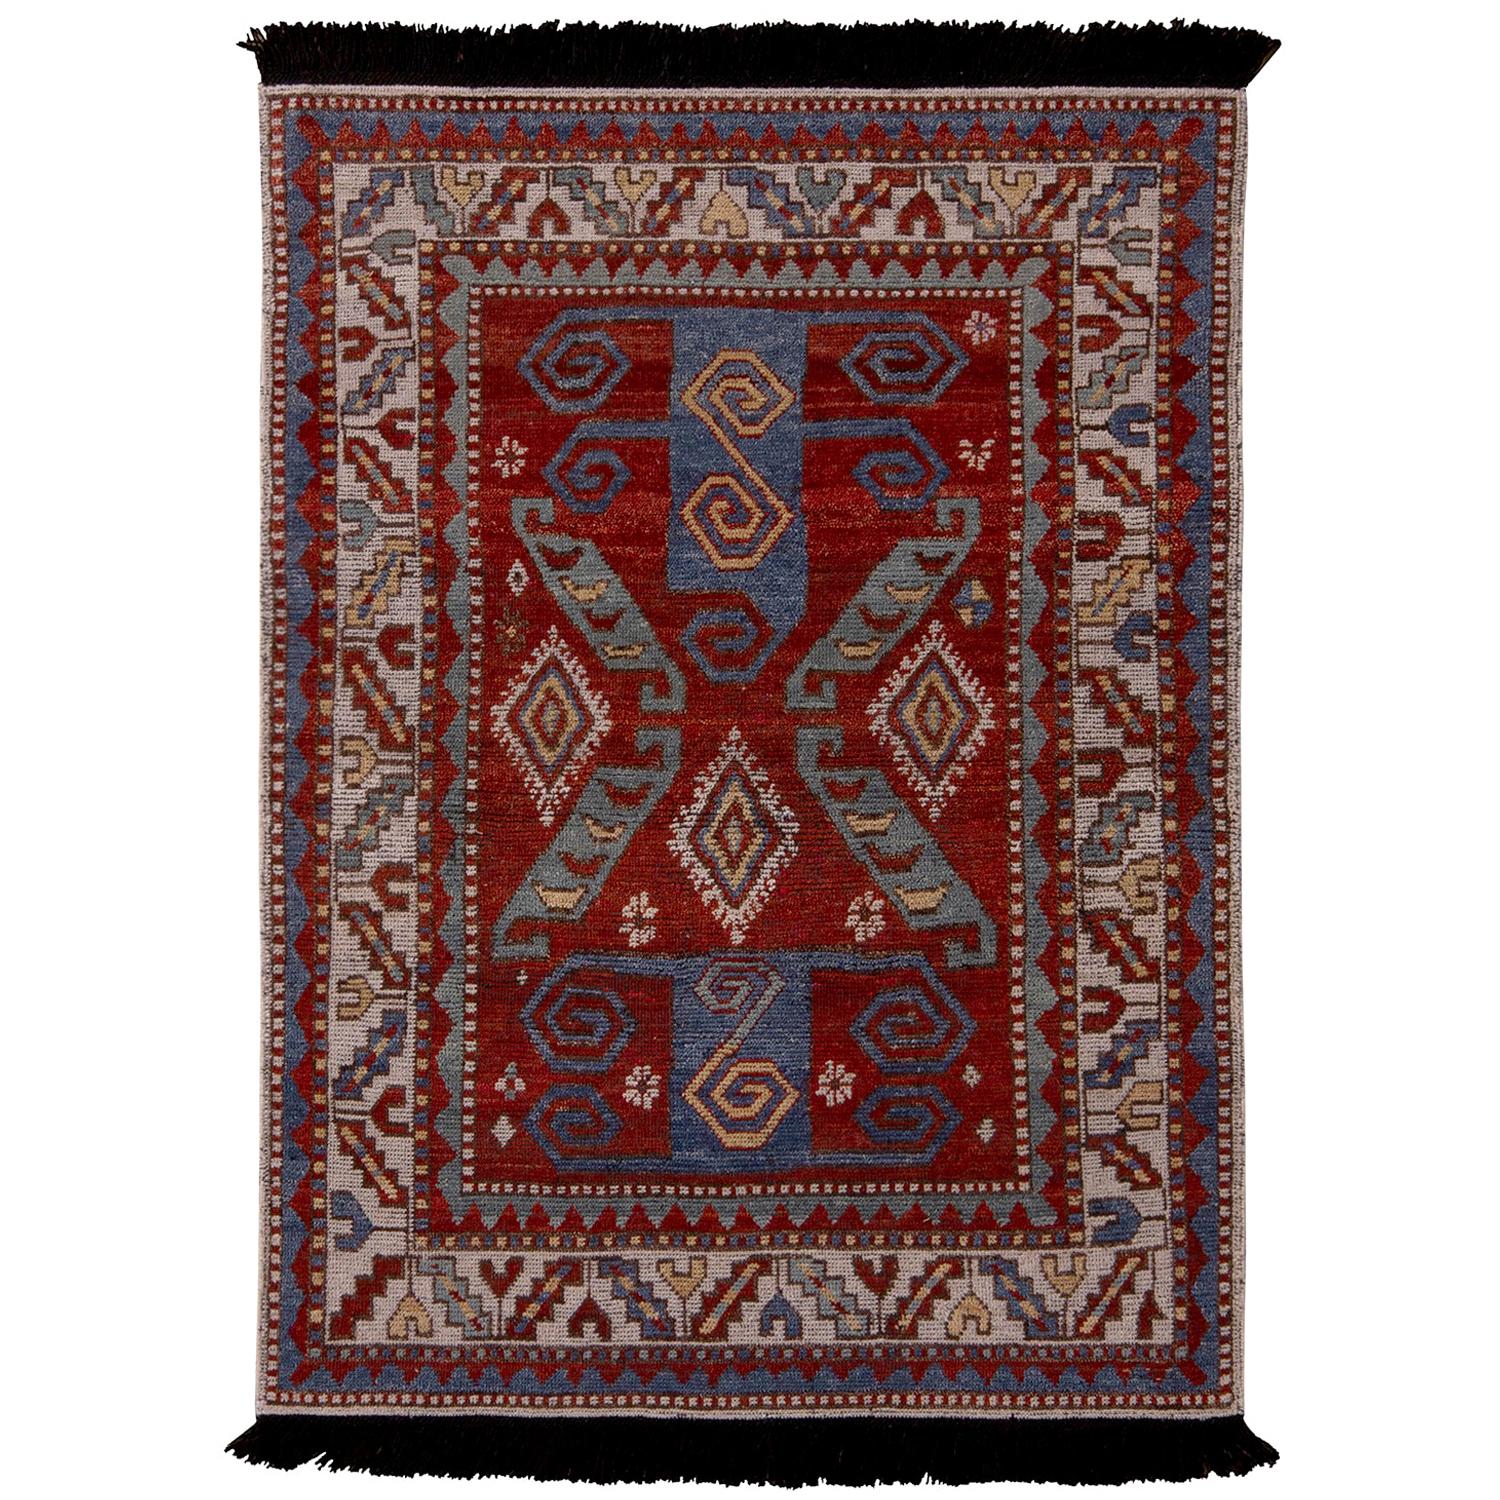 Rug & Kilim’s Burano Kazak Style Geometric Beige Red and Blue Wool Custom Rug